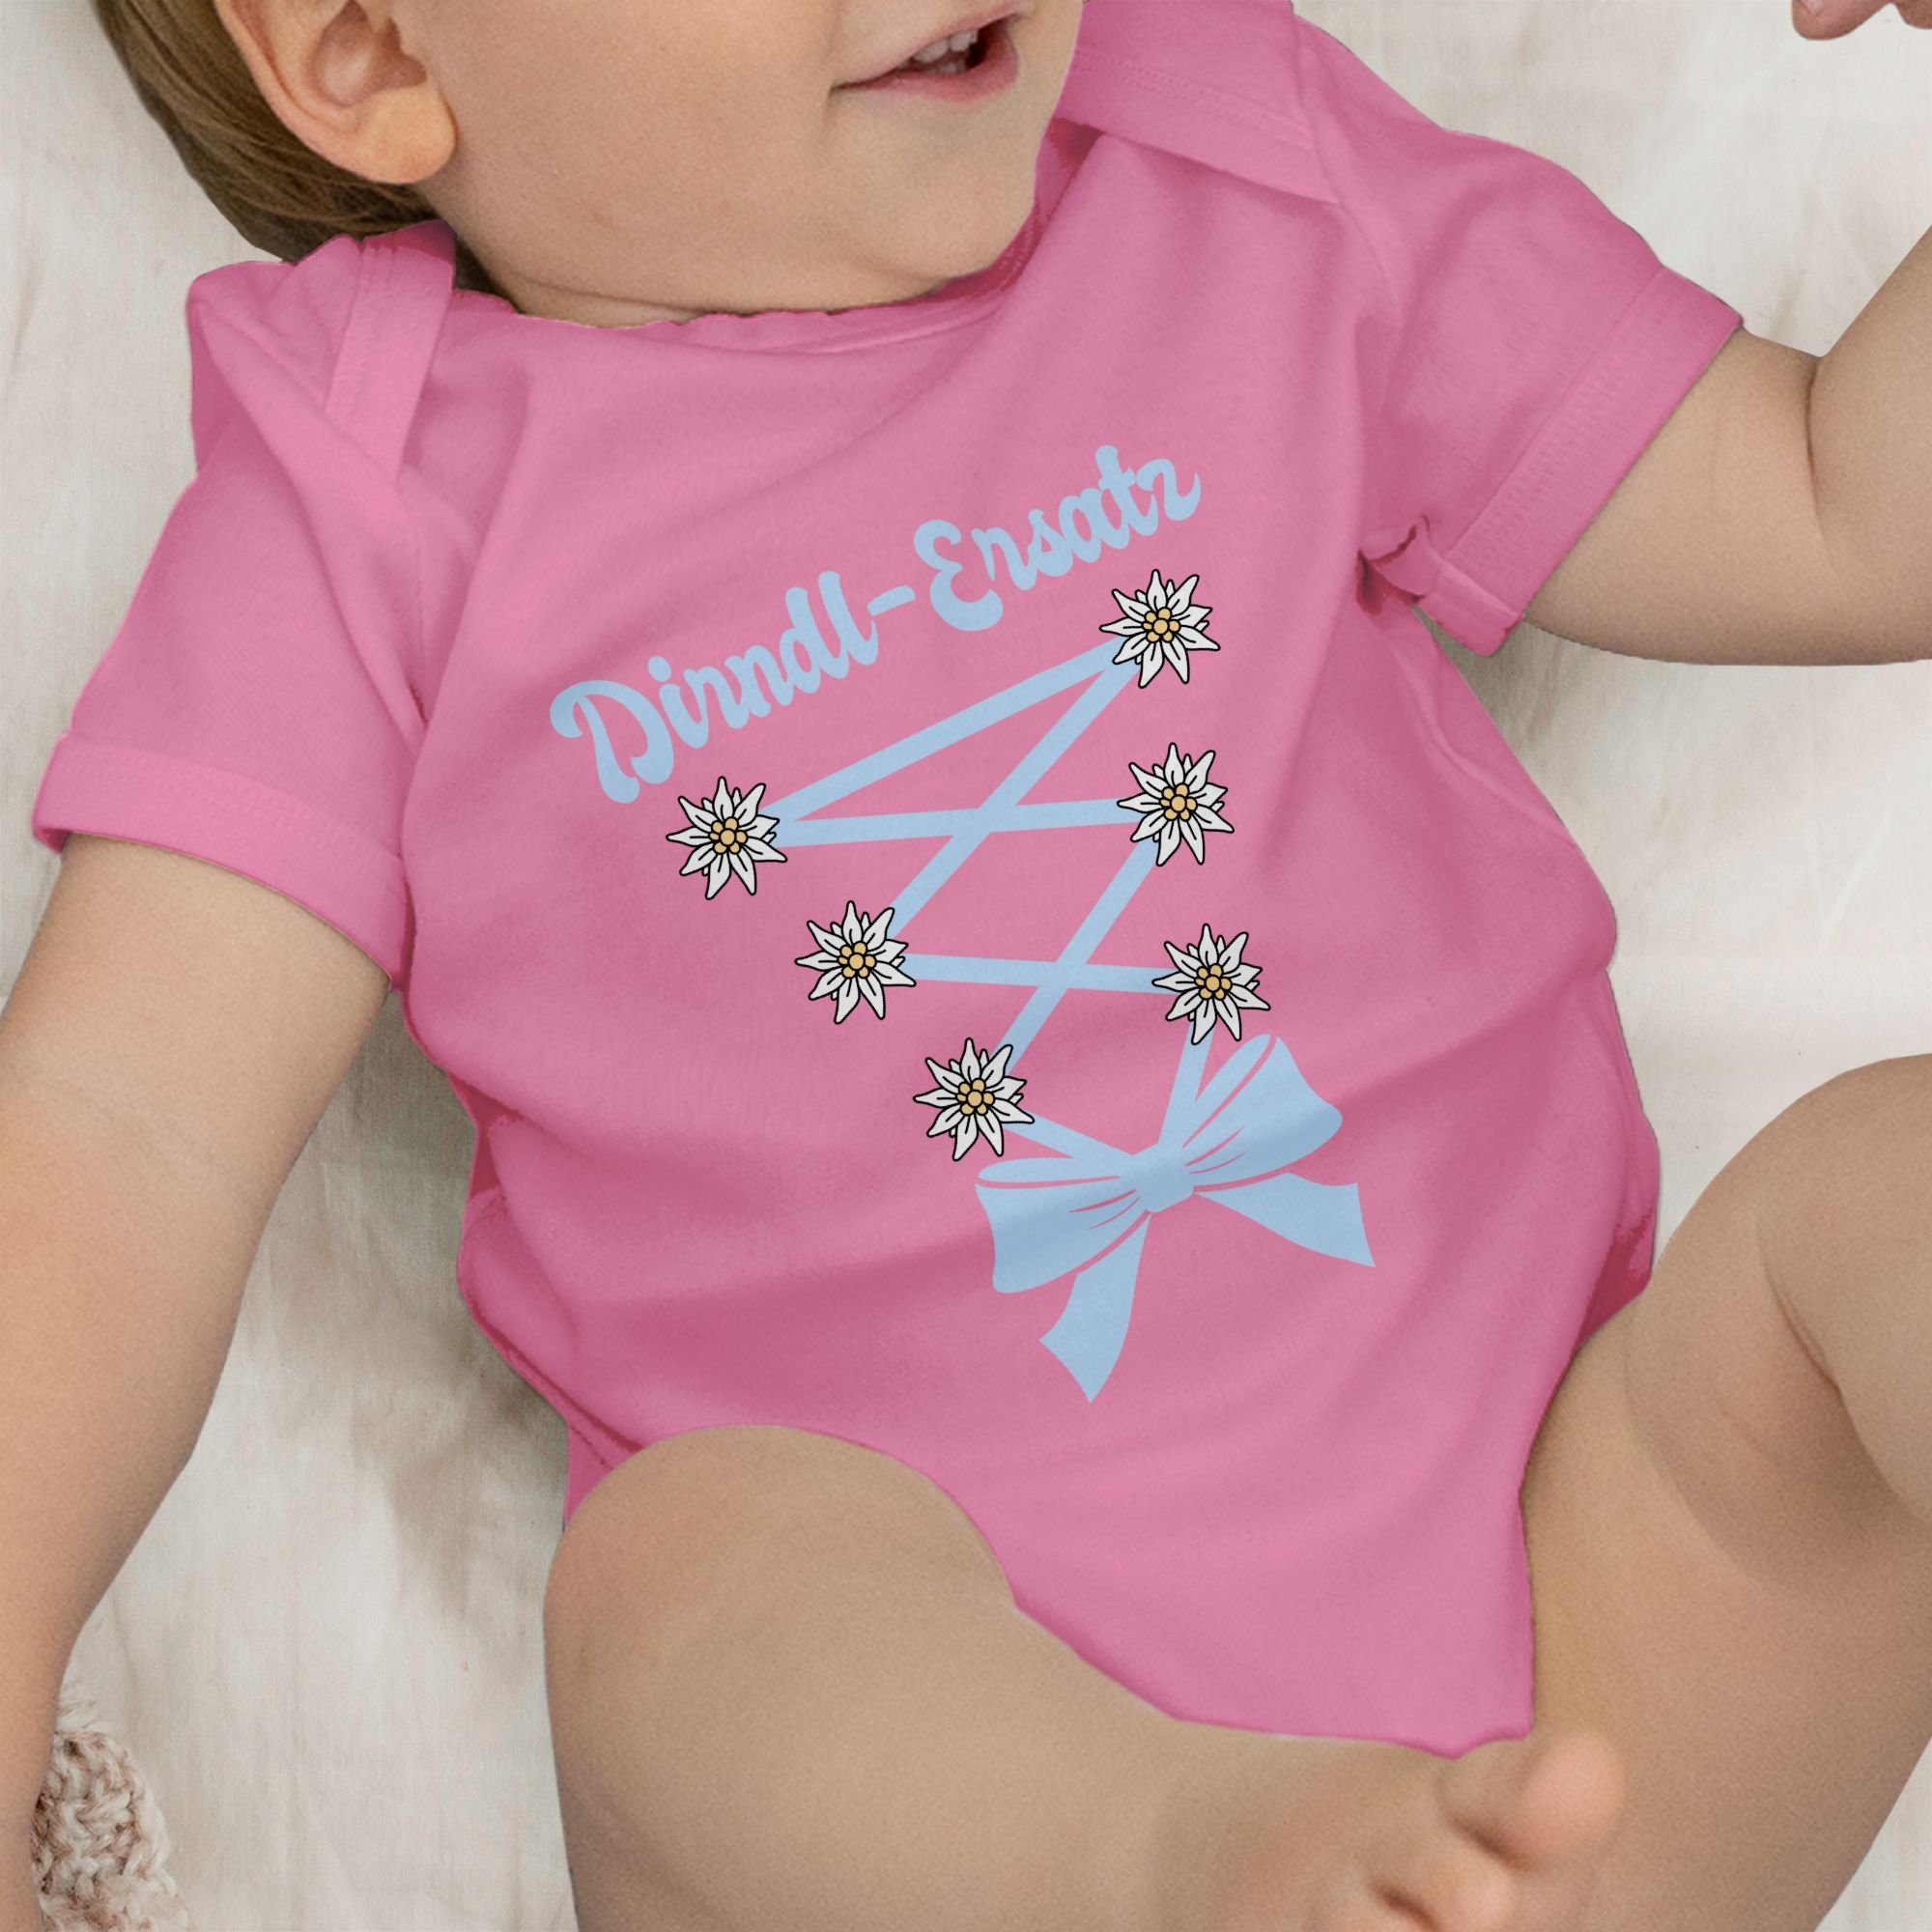 Shirtracer Shirtbody Dirndl Ersatz Korsage Baby 1 für Mode Pink Outfit Oktoberfest